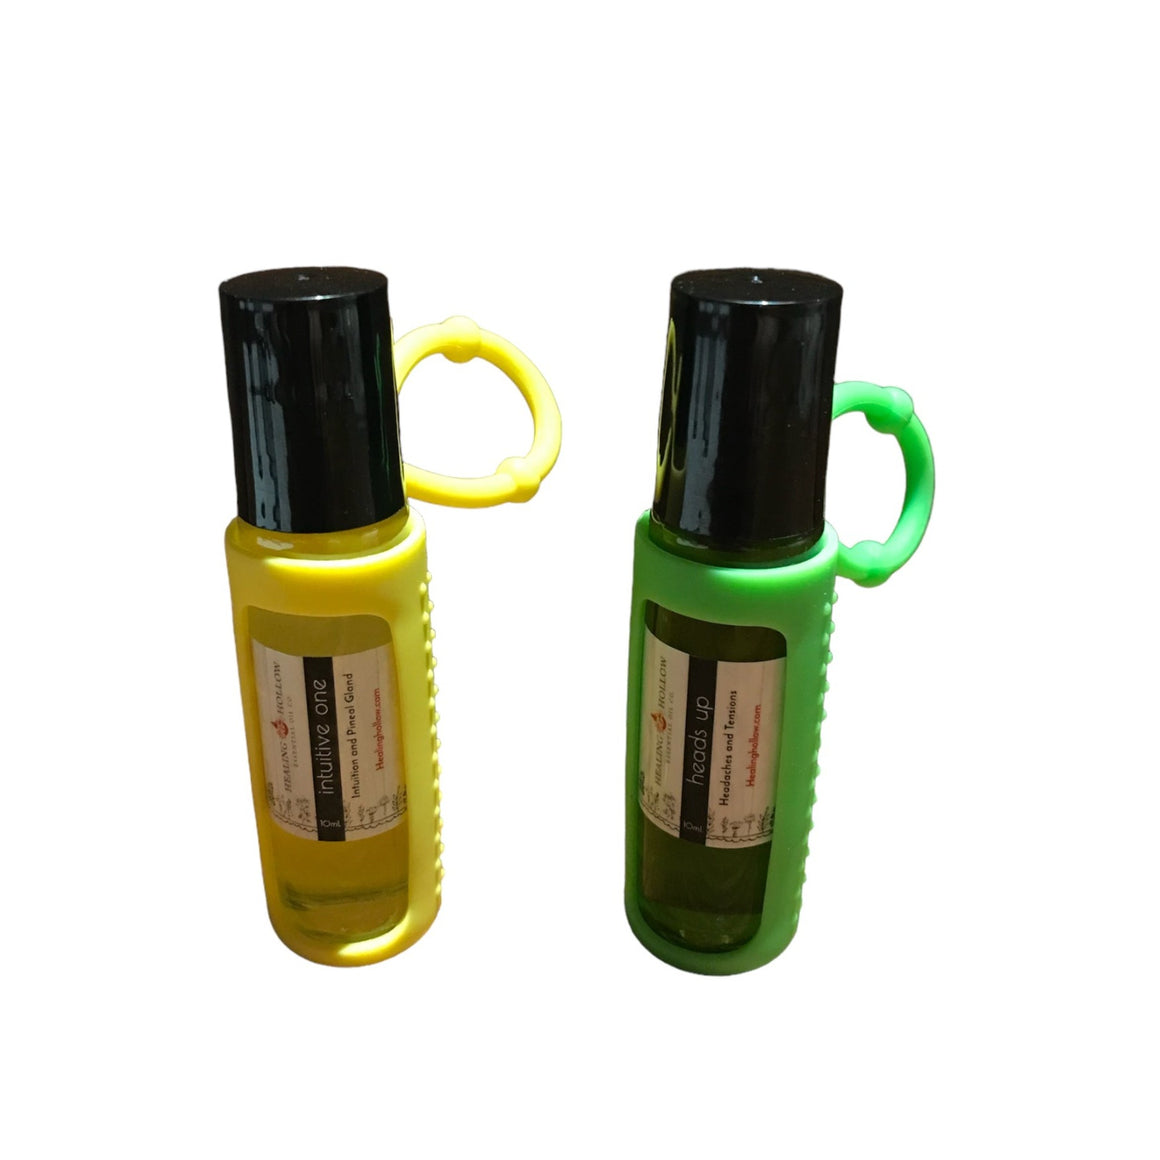 Keychain Oil Bottle Holders